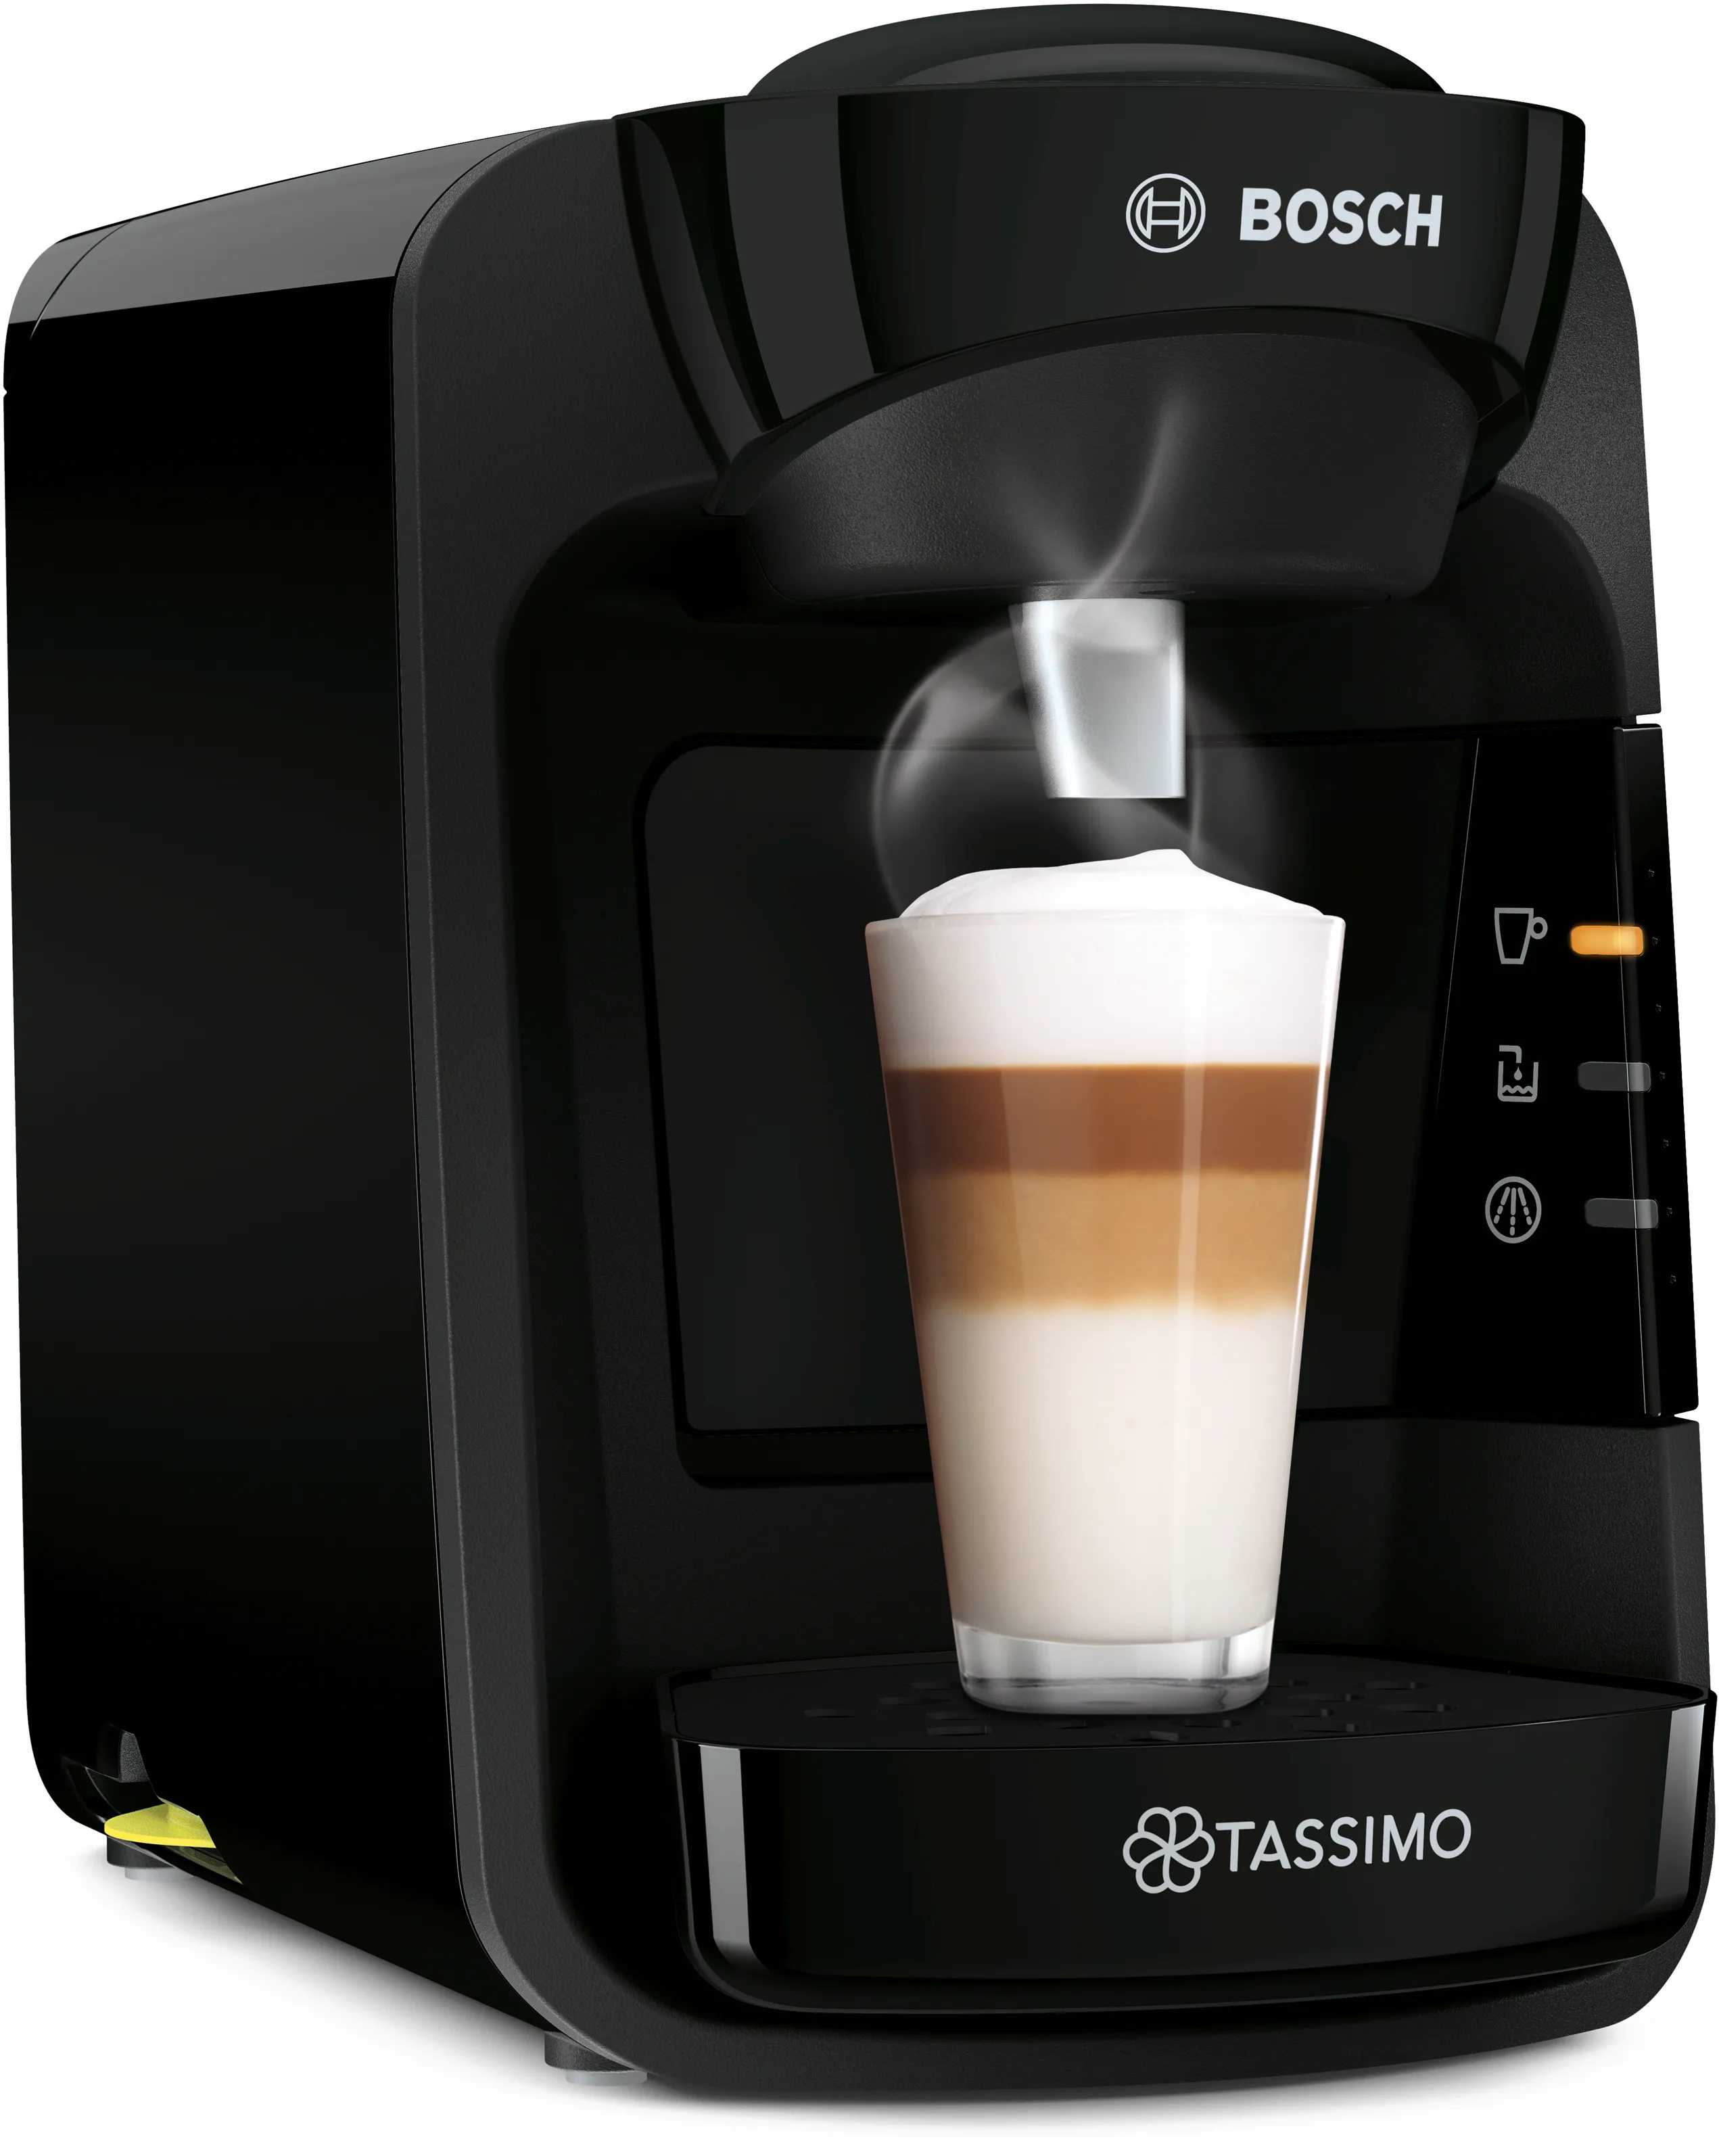 Hot drinks machine TASSIMO SUNY 